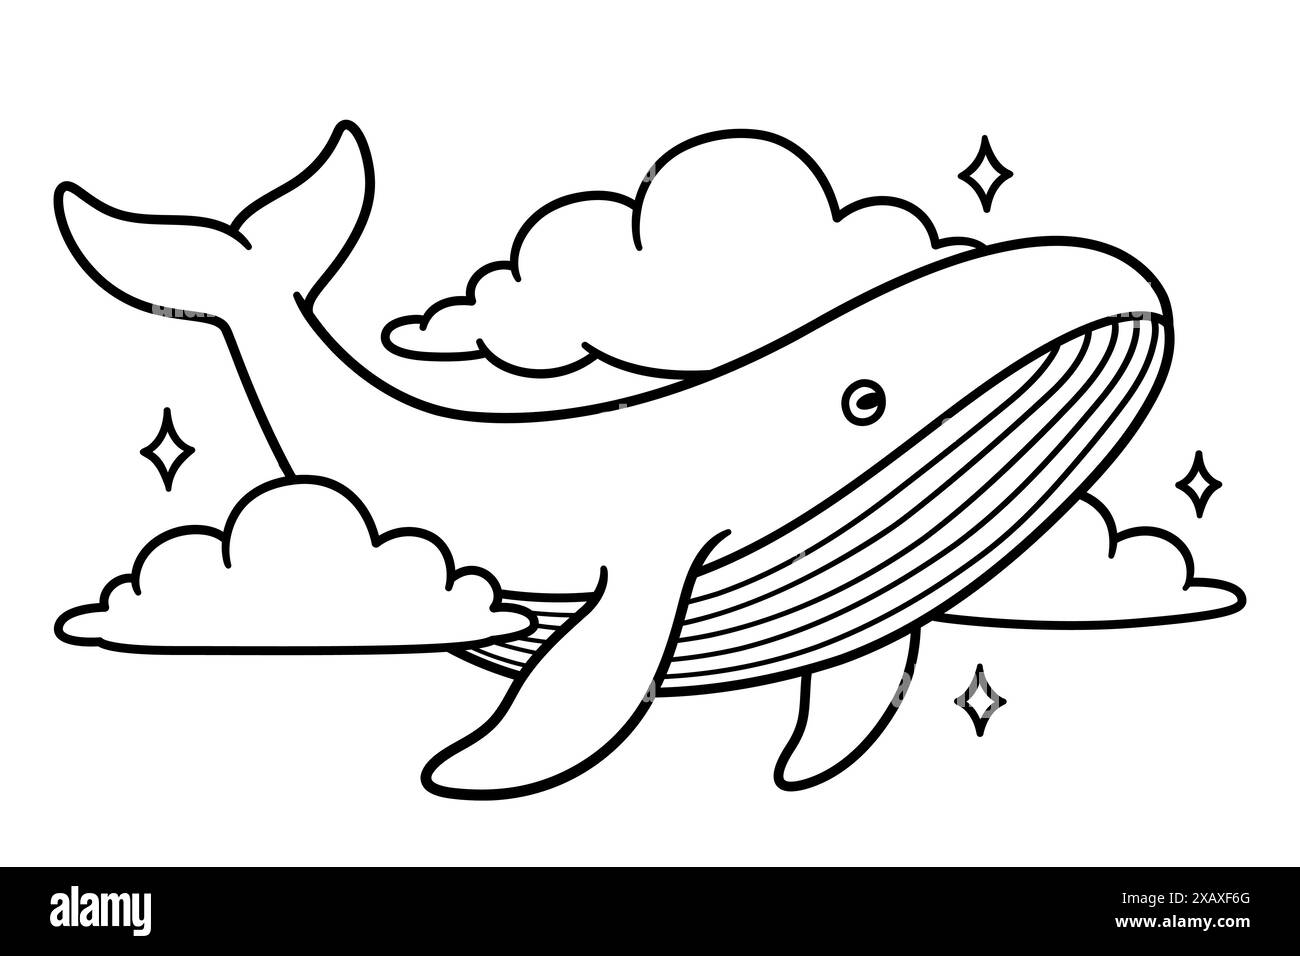 Baleine volant dans le ciel parmi les nuages. Dessin fantaisie surréaliste, ligne noir et blanc Illustration vectorielle dessinée à la main. Illustration de Vecteur